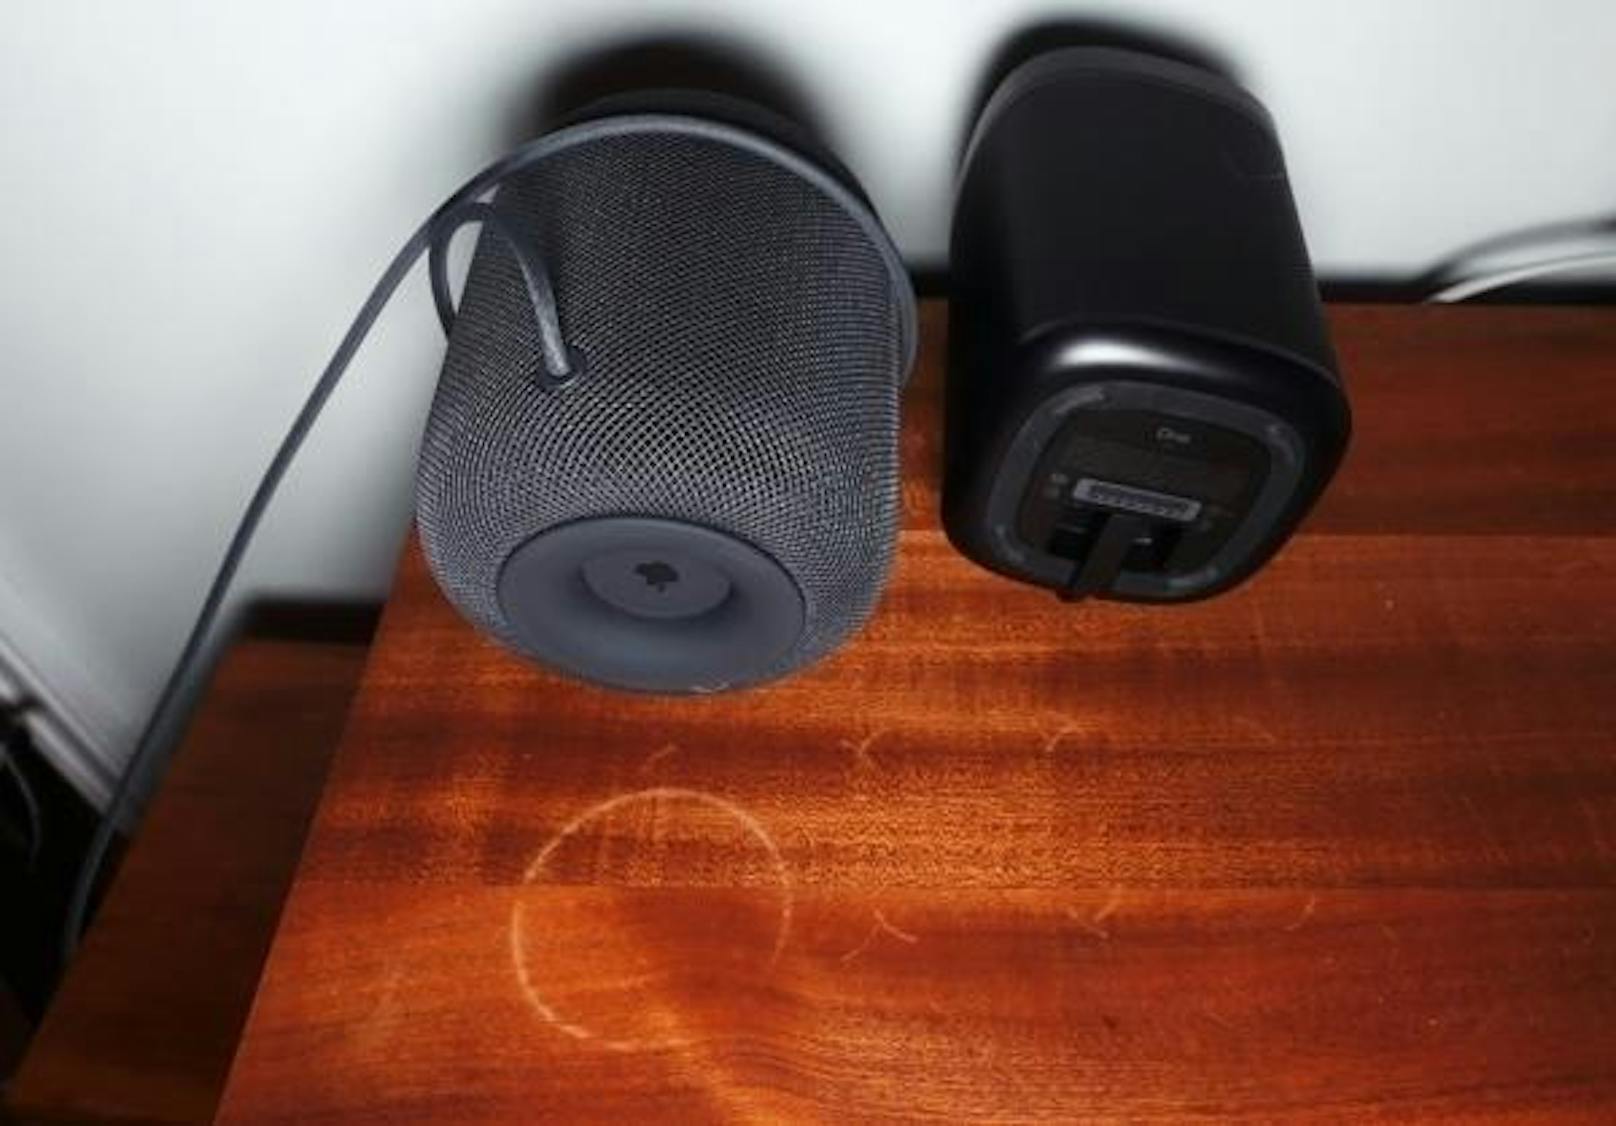 <b>16. Februar 2018:</b> Apples neuer Lautsprecher, der Homepod, stand diese Woche in der Kritik. Nutzer, die den Speaker auf einer unversiegelten Holzoberfläche abgestellt hatten, beschwerten sich über Abdrücke. Die Flecken sind zu sehen, sobald man die Box anhebt. Nun bericht ein Nutzer, dass das Phänomen auch bei der Konkurrenz auftrete: "Die Silikonfüße meines Sonos-Lautsprechers haben Flecken auf dem Holzschreibtisch hinterlassen", schreibt der Journalist Mike Prospero von Tomsguide.com. Er habe dies dem Hersteller gemeldet. Laut Sonos sind keine anderen derartigen Vorfälle bekannt. Man wolle dies nun aber untersuchen.